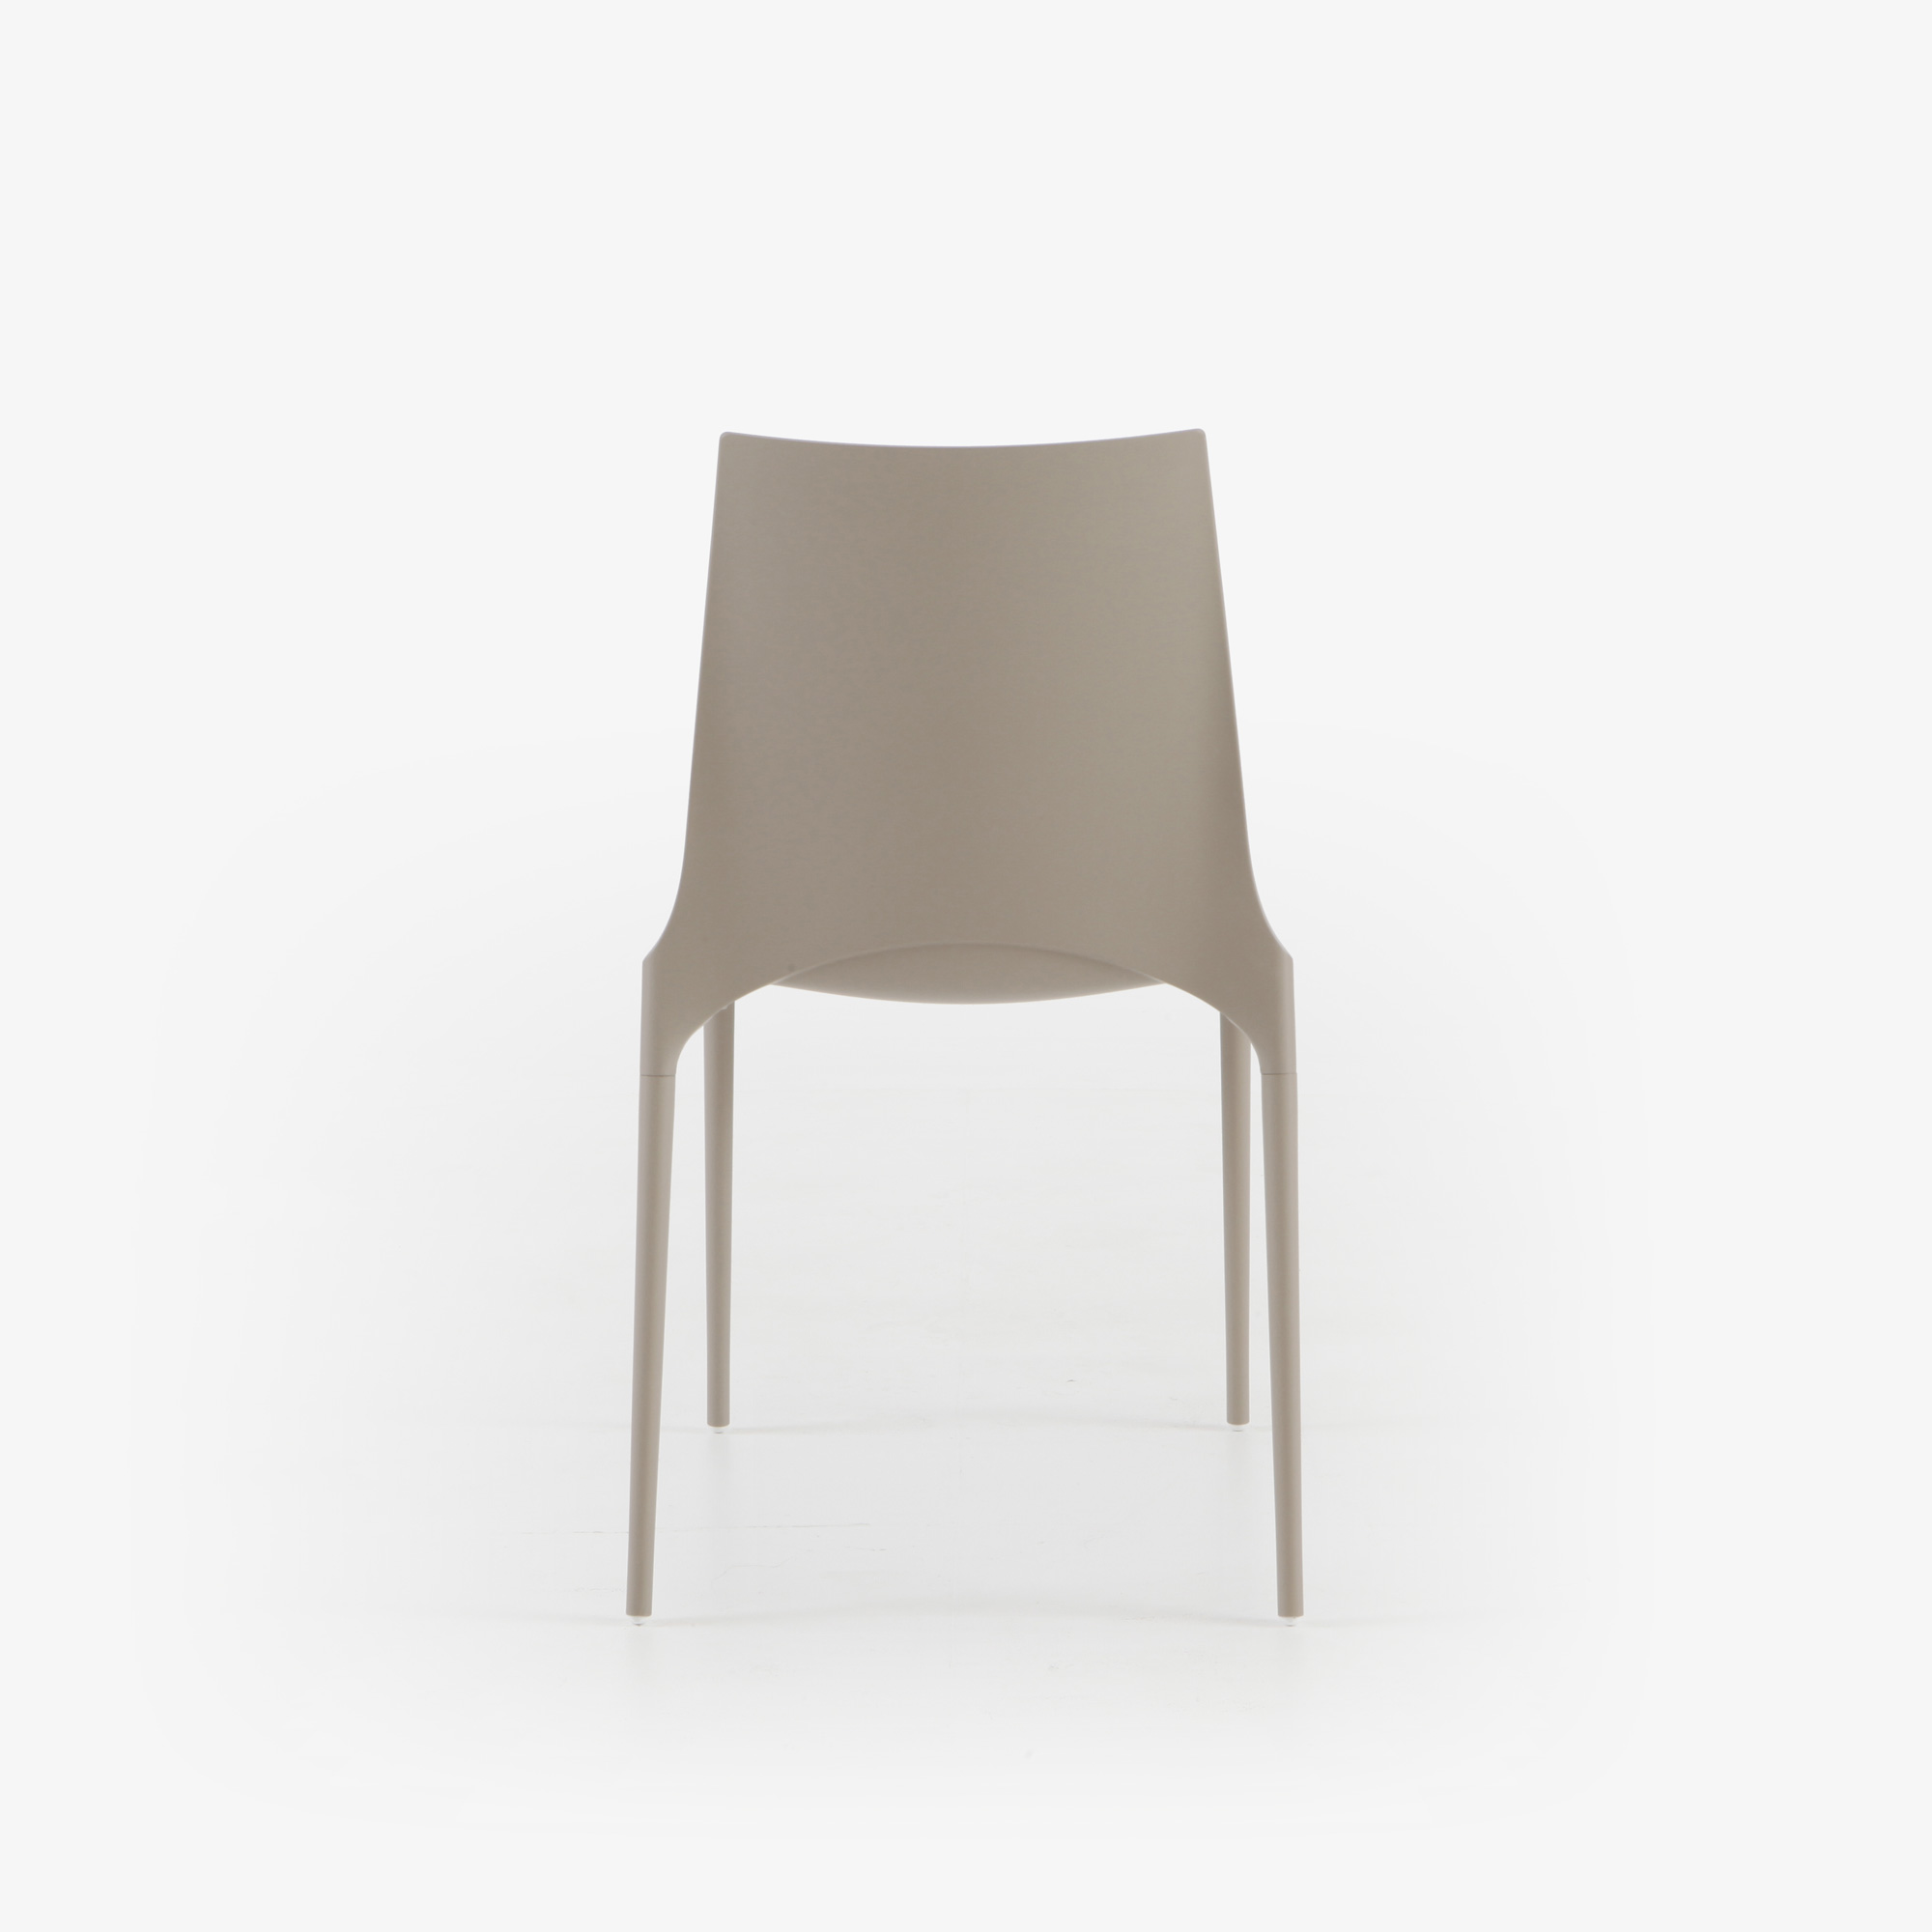 Image Dining chair beige indoor / outdoor 5